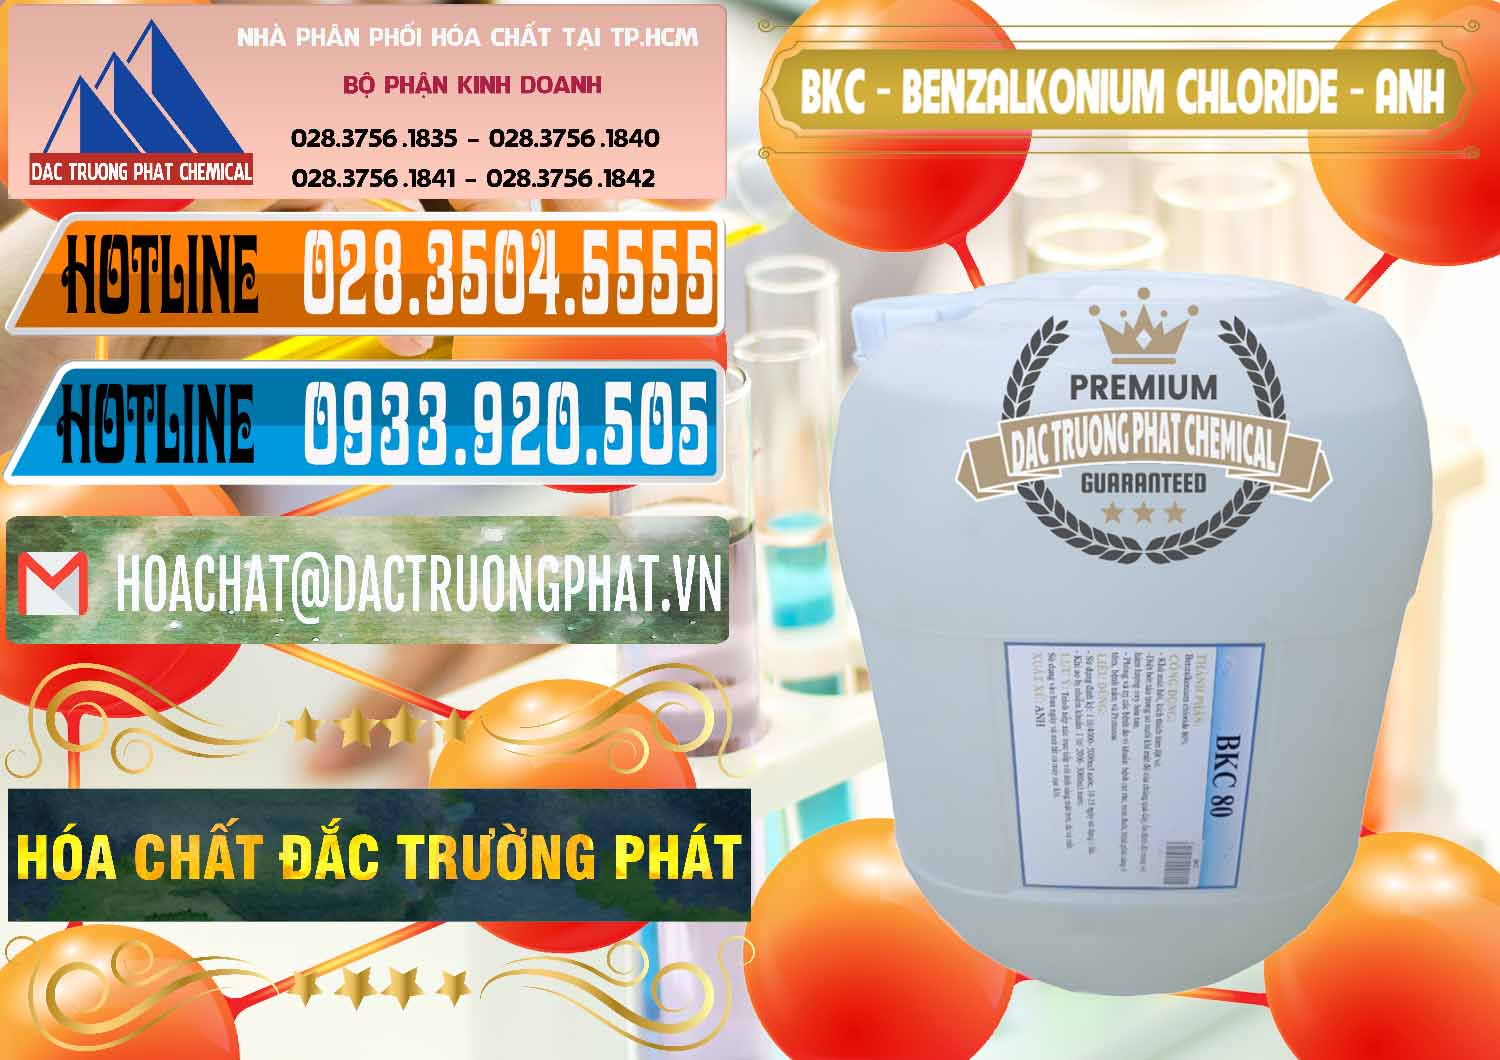 Nơi bán _ phân phối BKC - Benzalkonium Chloride Anh Quốc Uk Kingdoms - 0415 - Công ty chuyên phân phối ( bán ) hóa chất tại TP.HCM - stmp.net